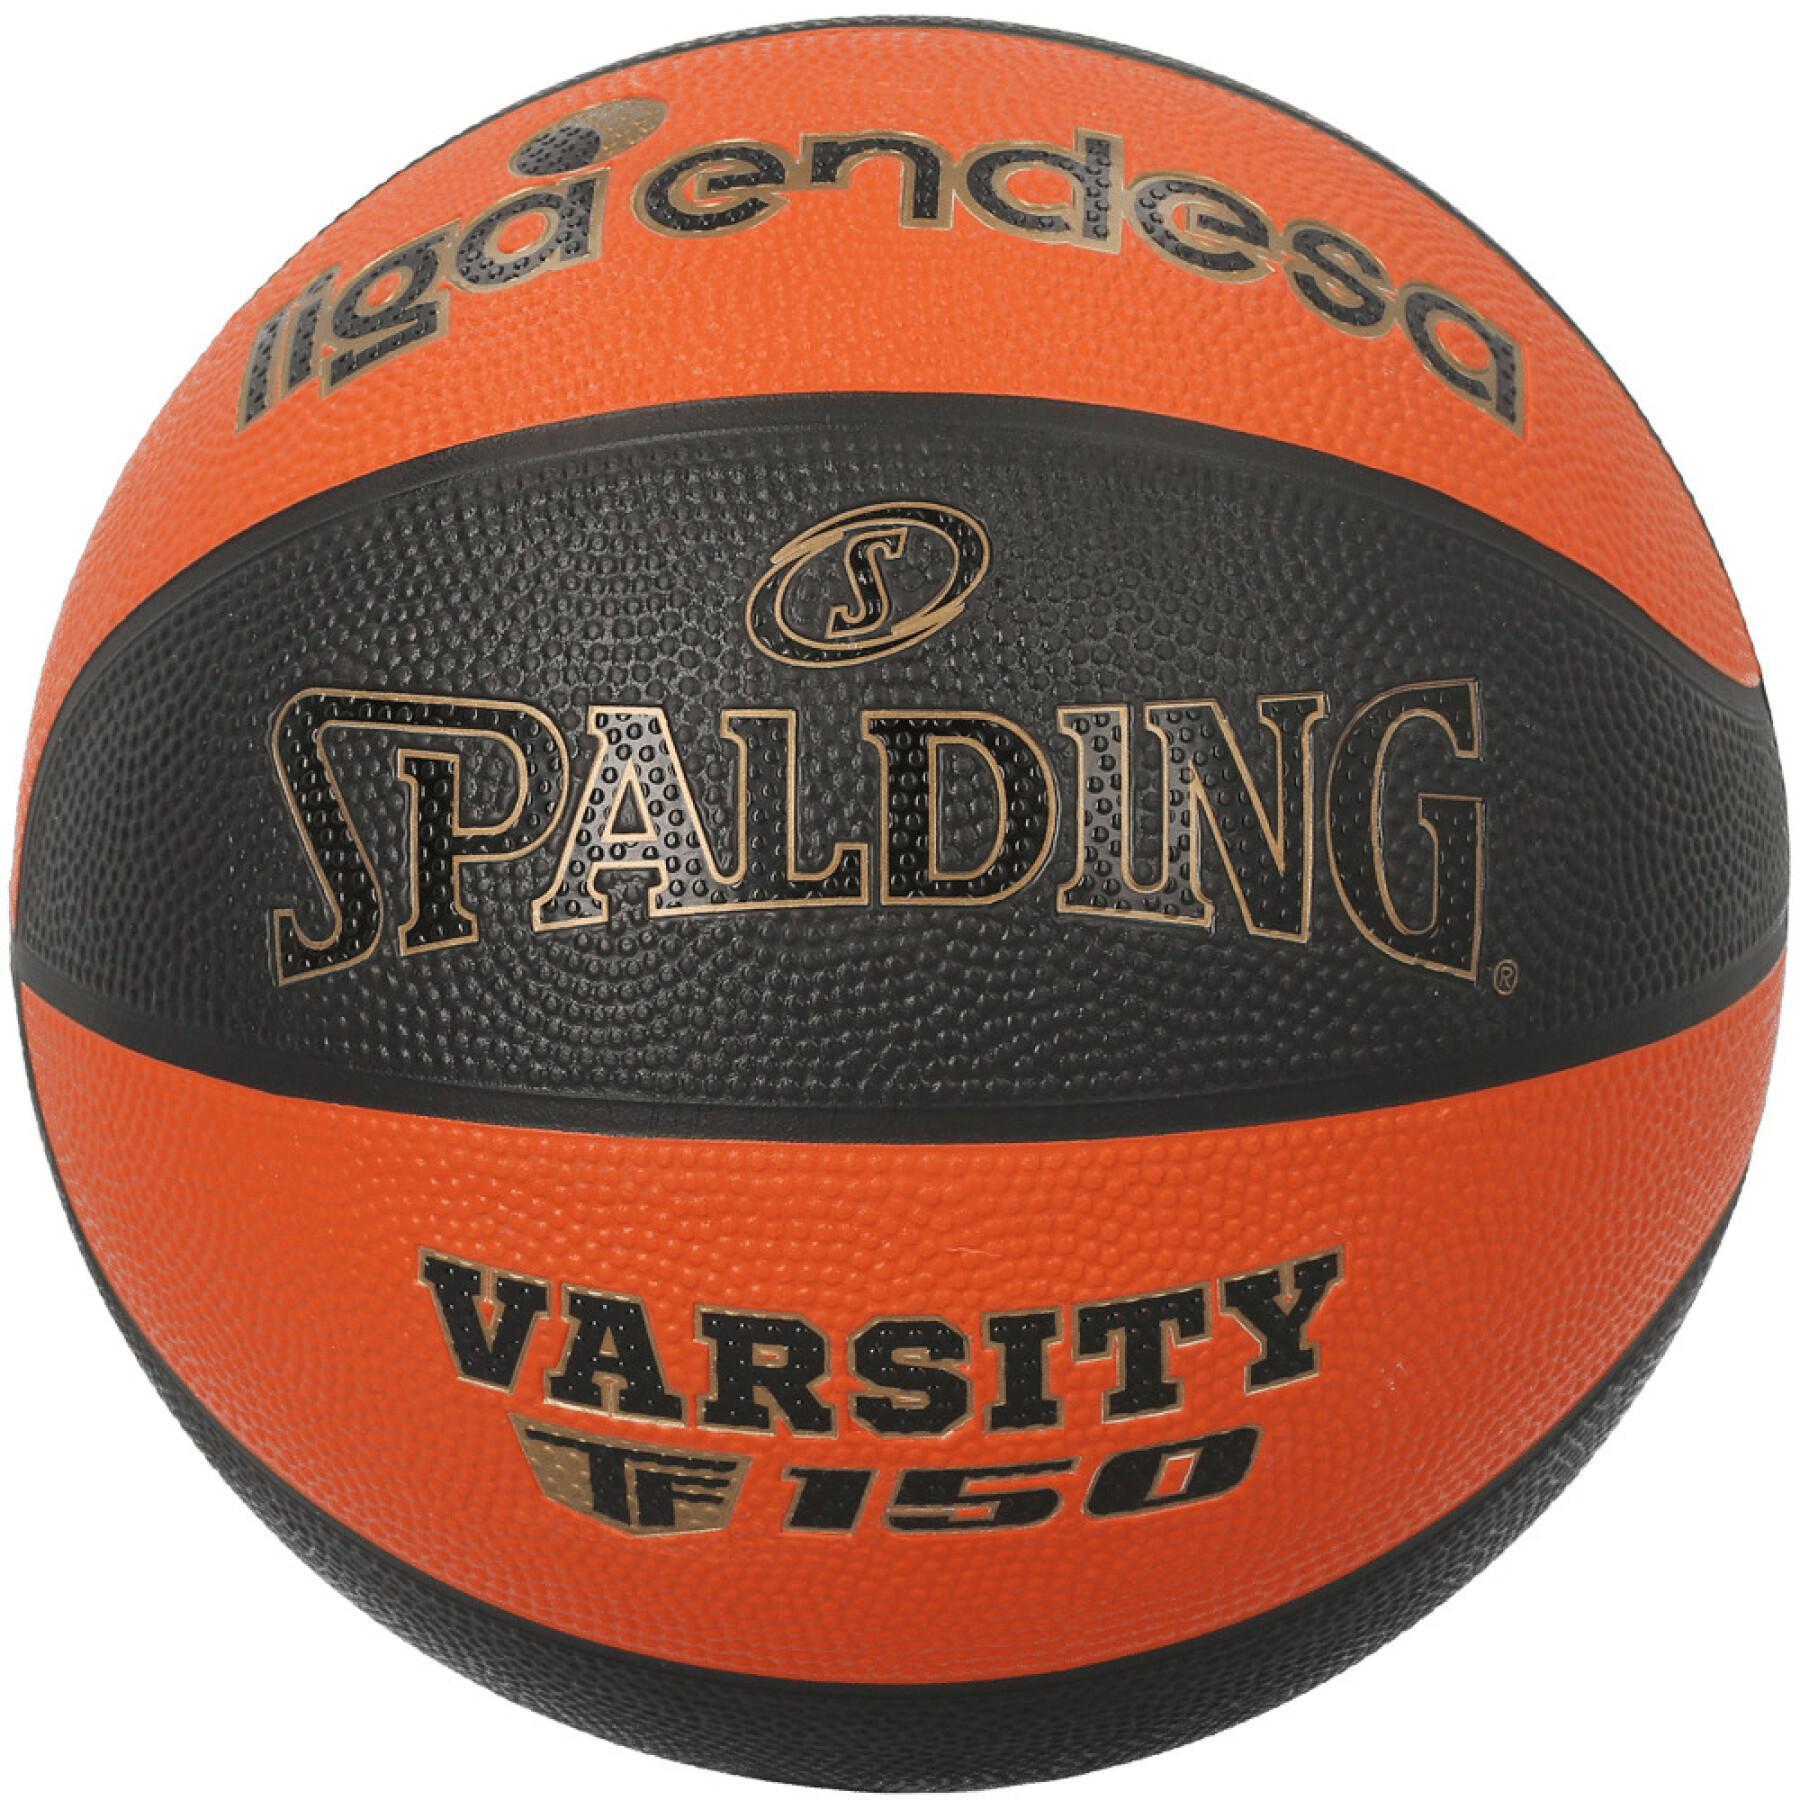 Pallone Spalding Varsity TF-150 ACB